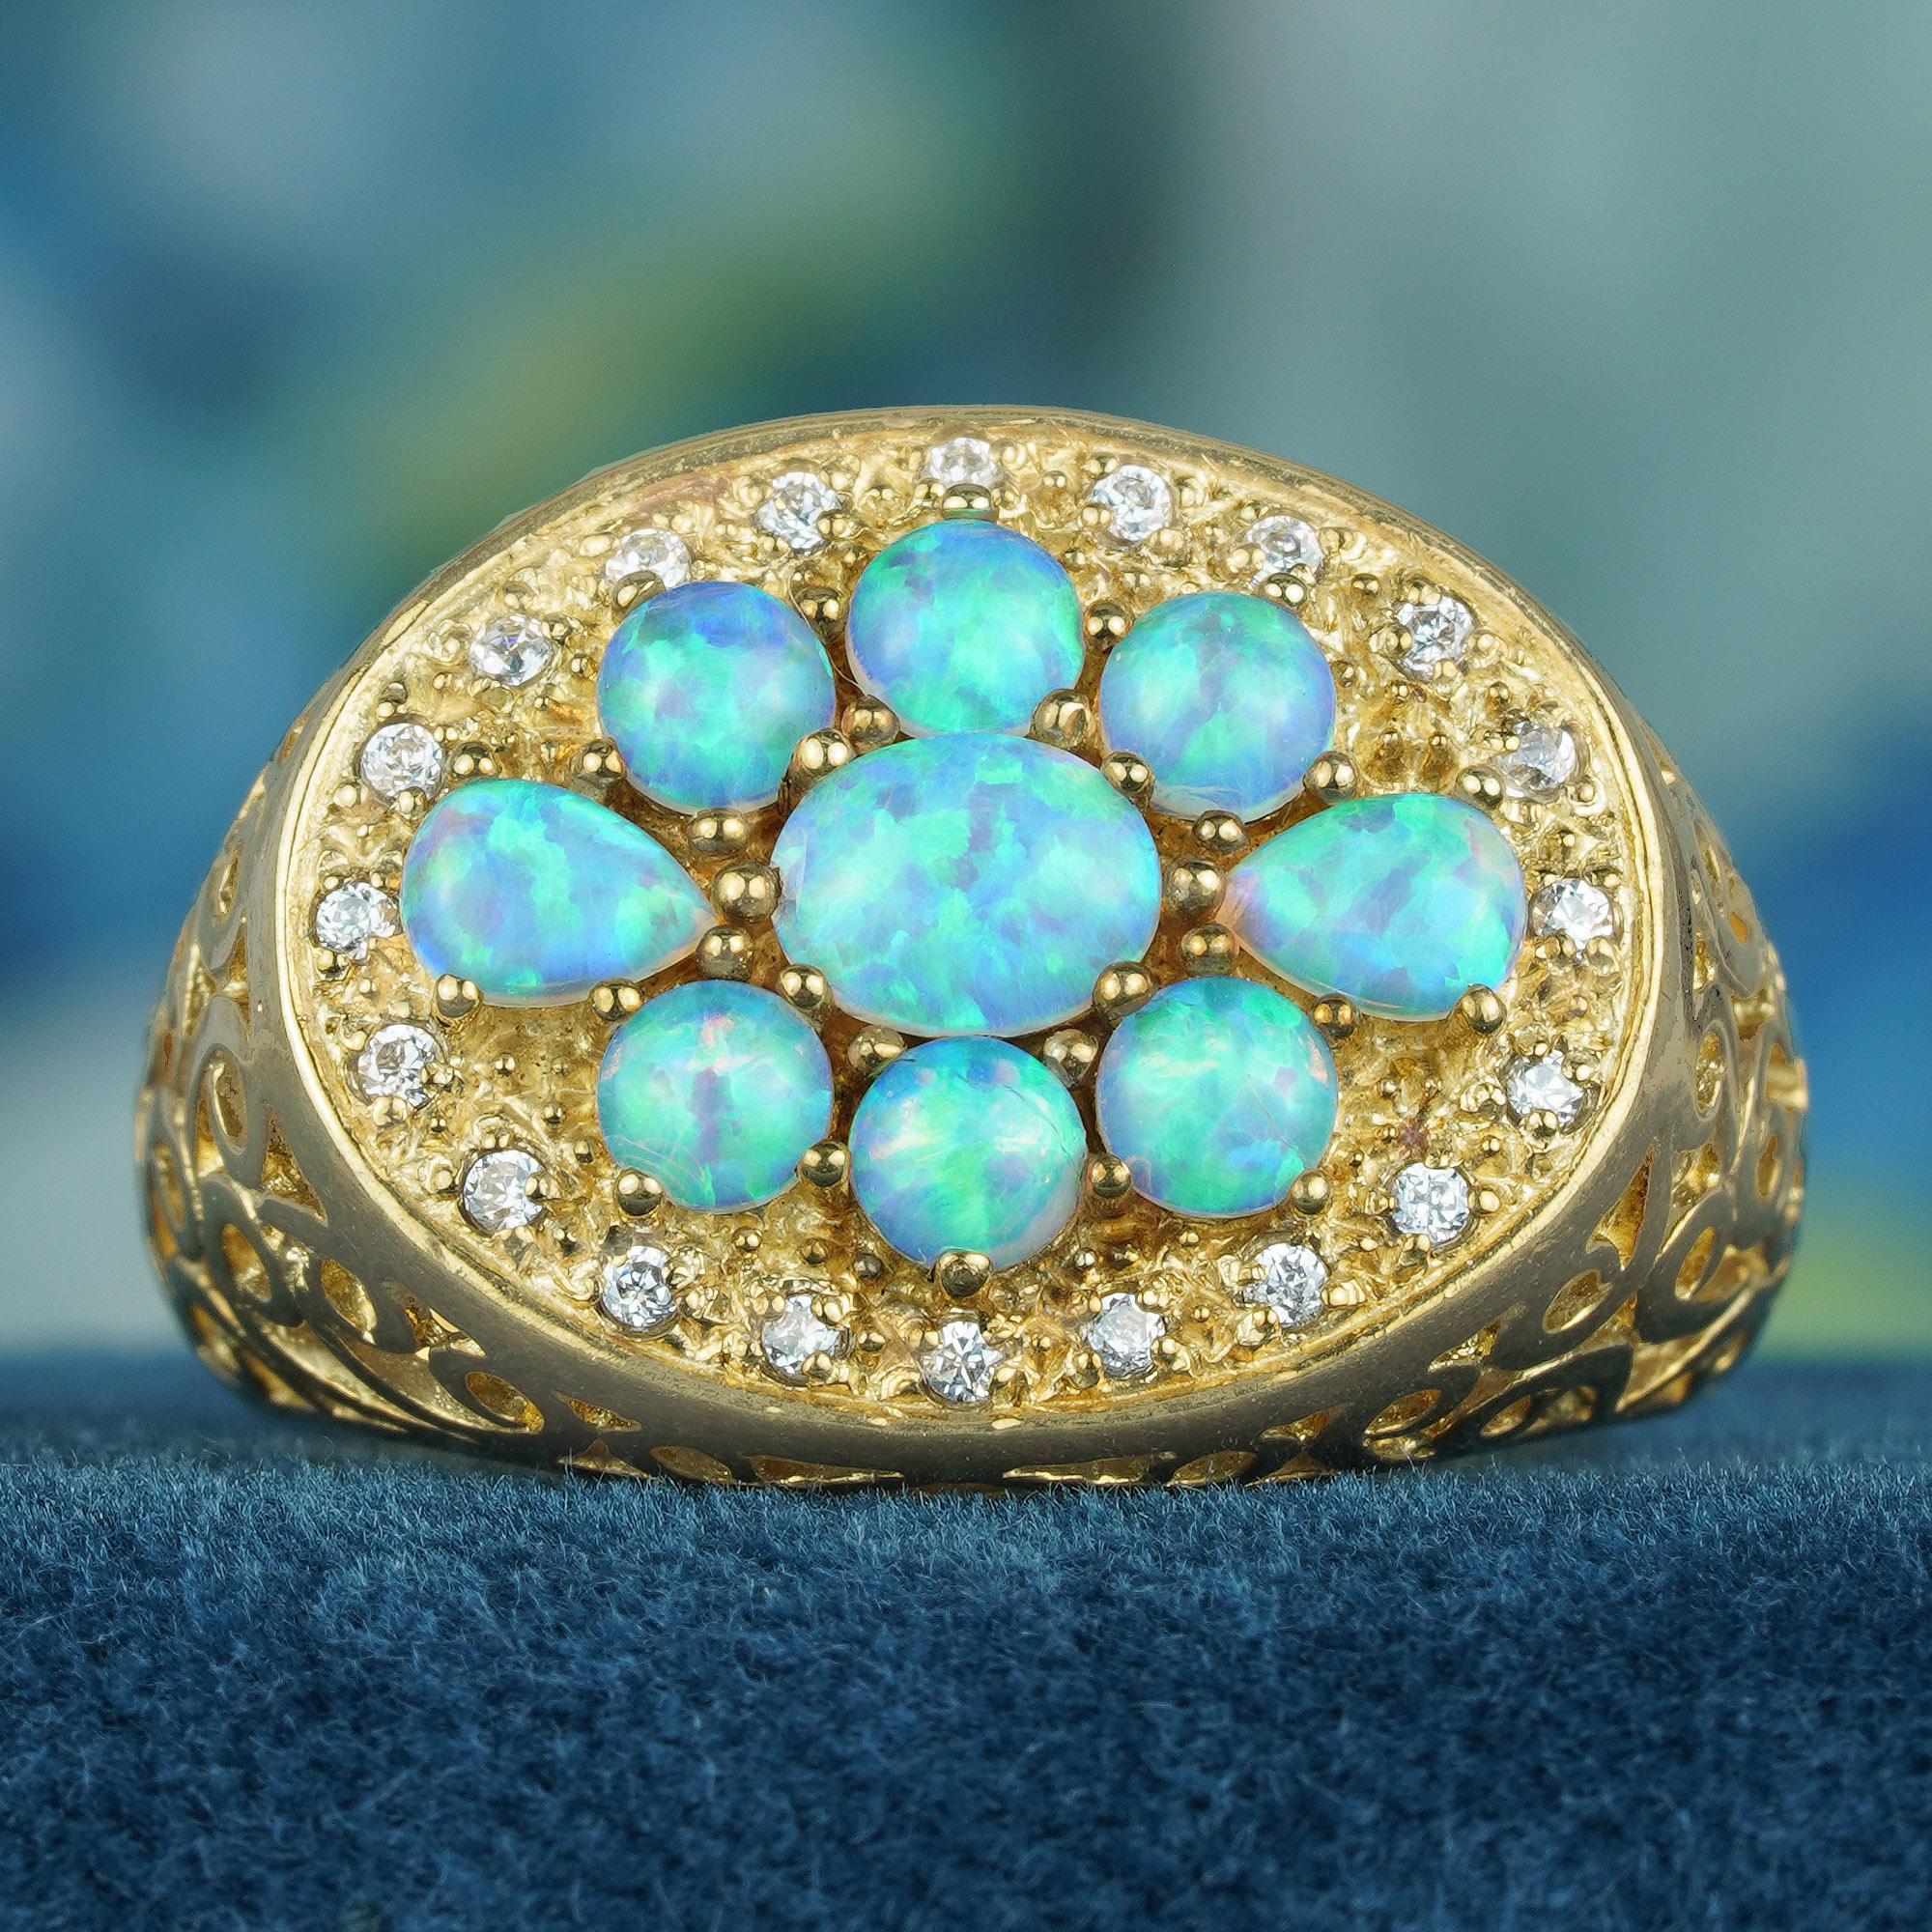 In der Mitte des Vintage-Rings befindet sich eine Gruppe natürlicher Opale, von denen jeder eine faszinierende weiße Farbe aufweist, die die Eleganz des Schmuckstücks unterstreicht. Um die Opale herum sind Diamanten eingebettet, die dem Ring eine